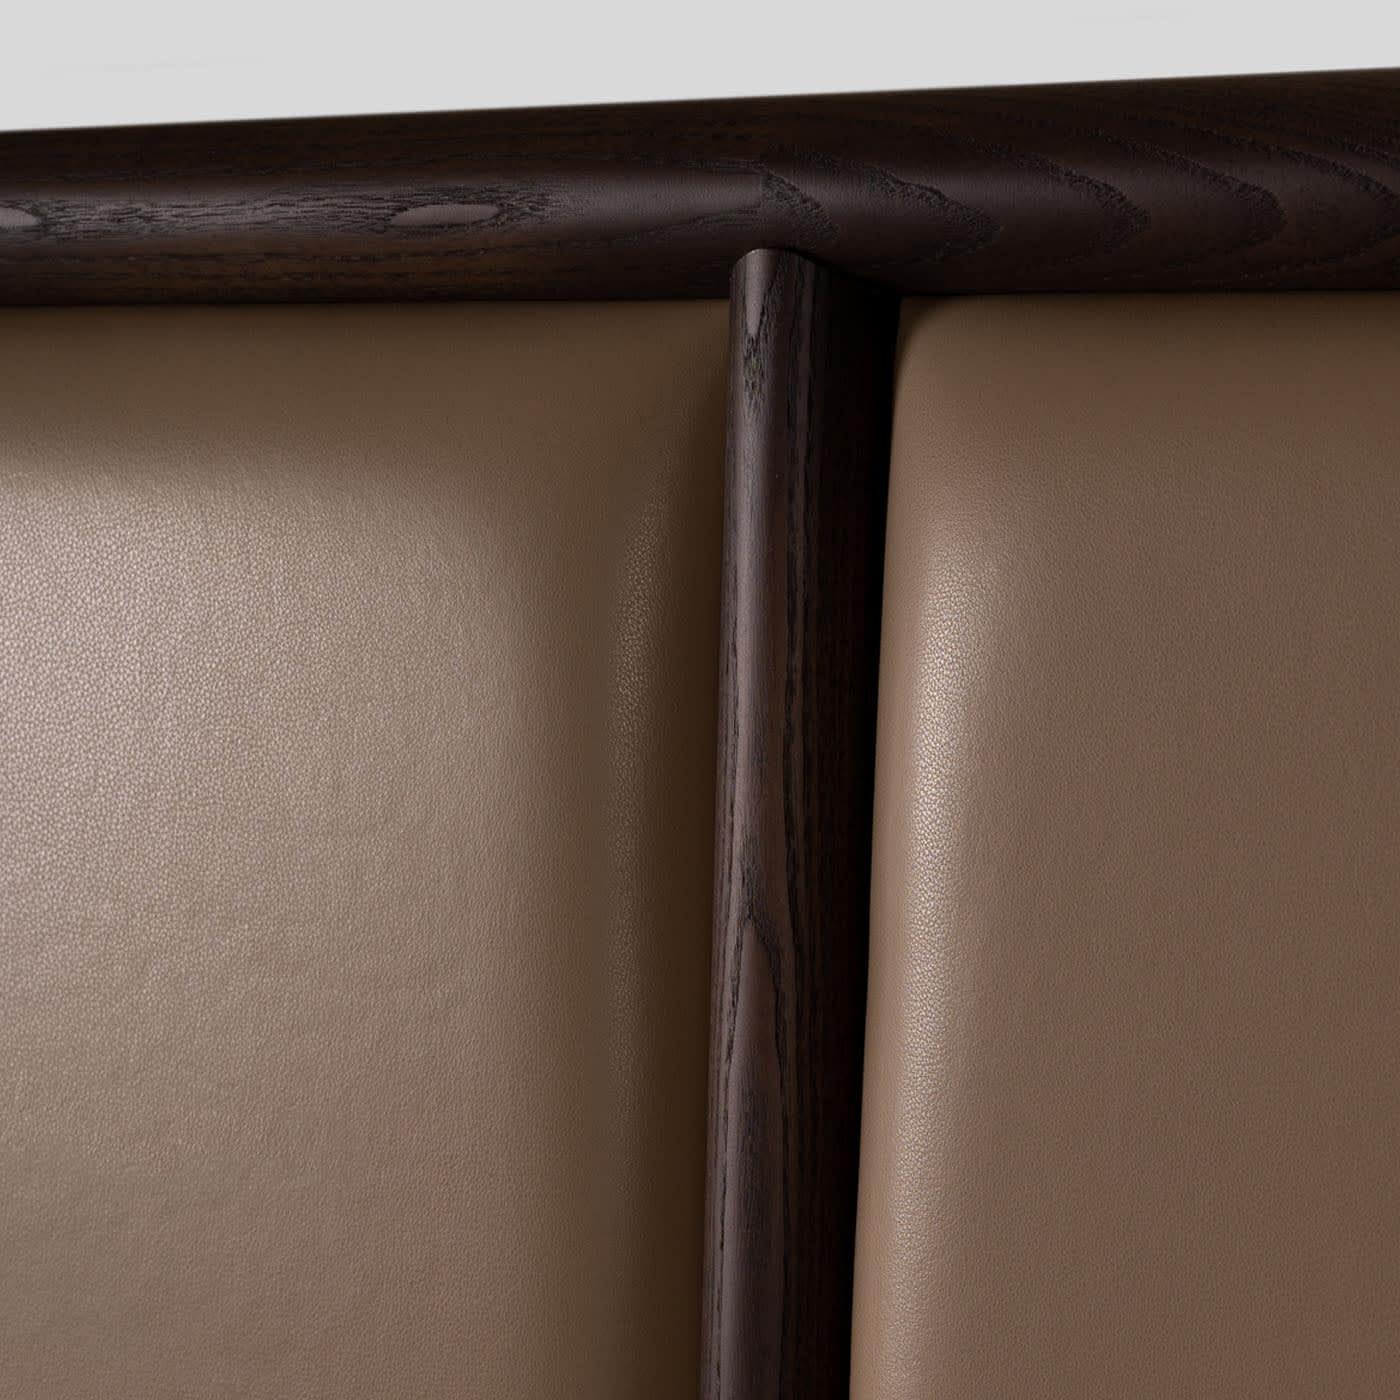 Mit den für den zeitgenössischen Designer Libero Rutilo typischen schlanken und klaren Linien von zeitloser Raffinesse setzt dieses Bett einen kühnen und eleganten Akzent in einem modernen Schlafzimmer. Die Struktur besteht aus Eschenholz, das auf